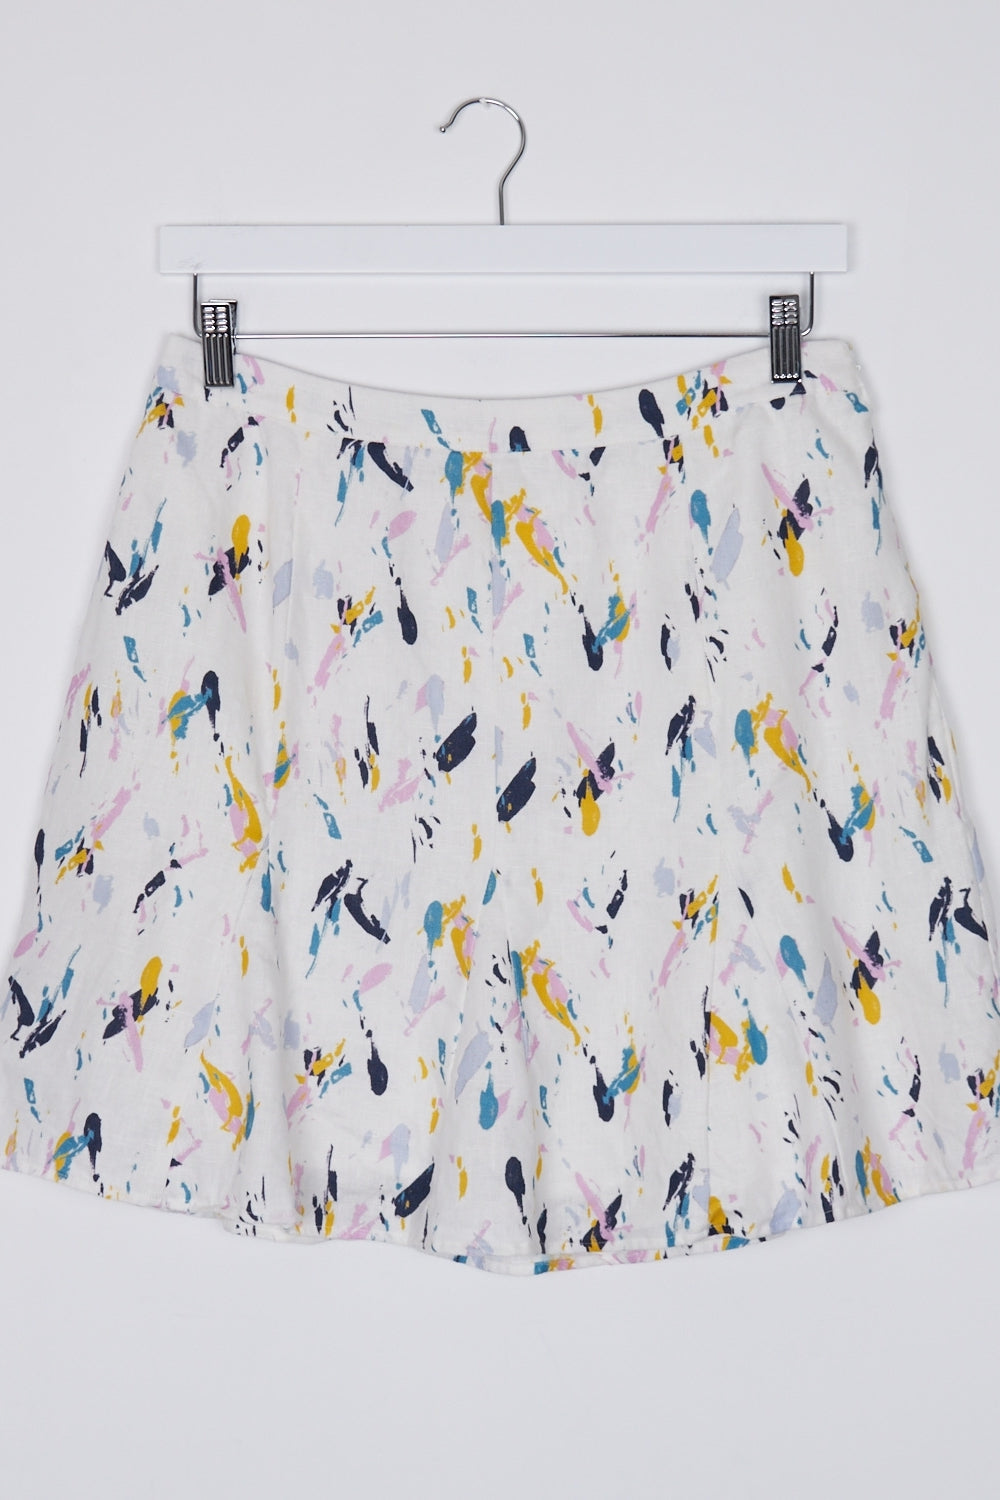 Marcs Patterned Linen Skirt 12